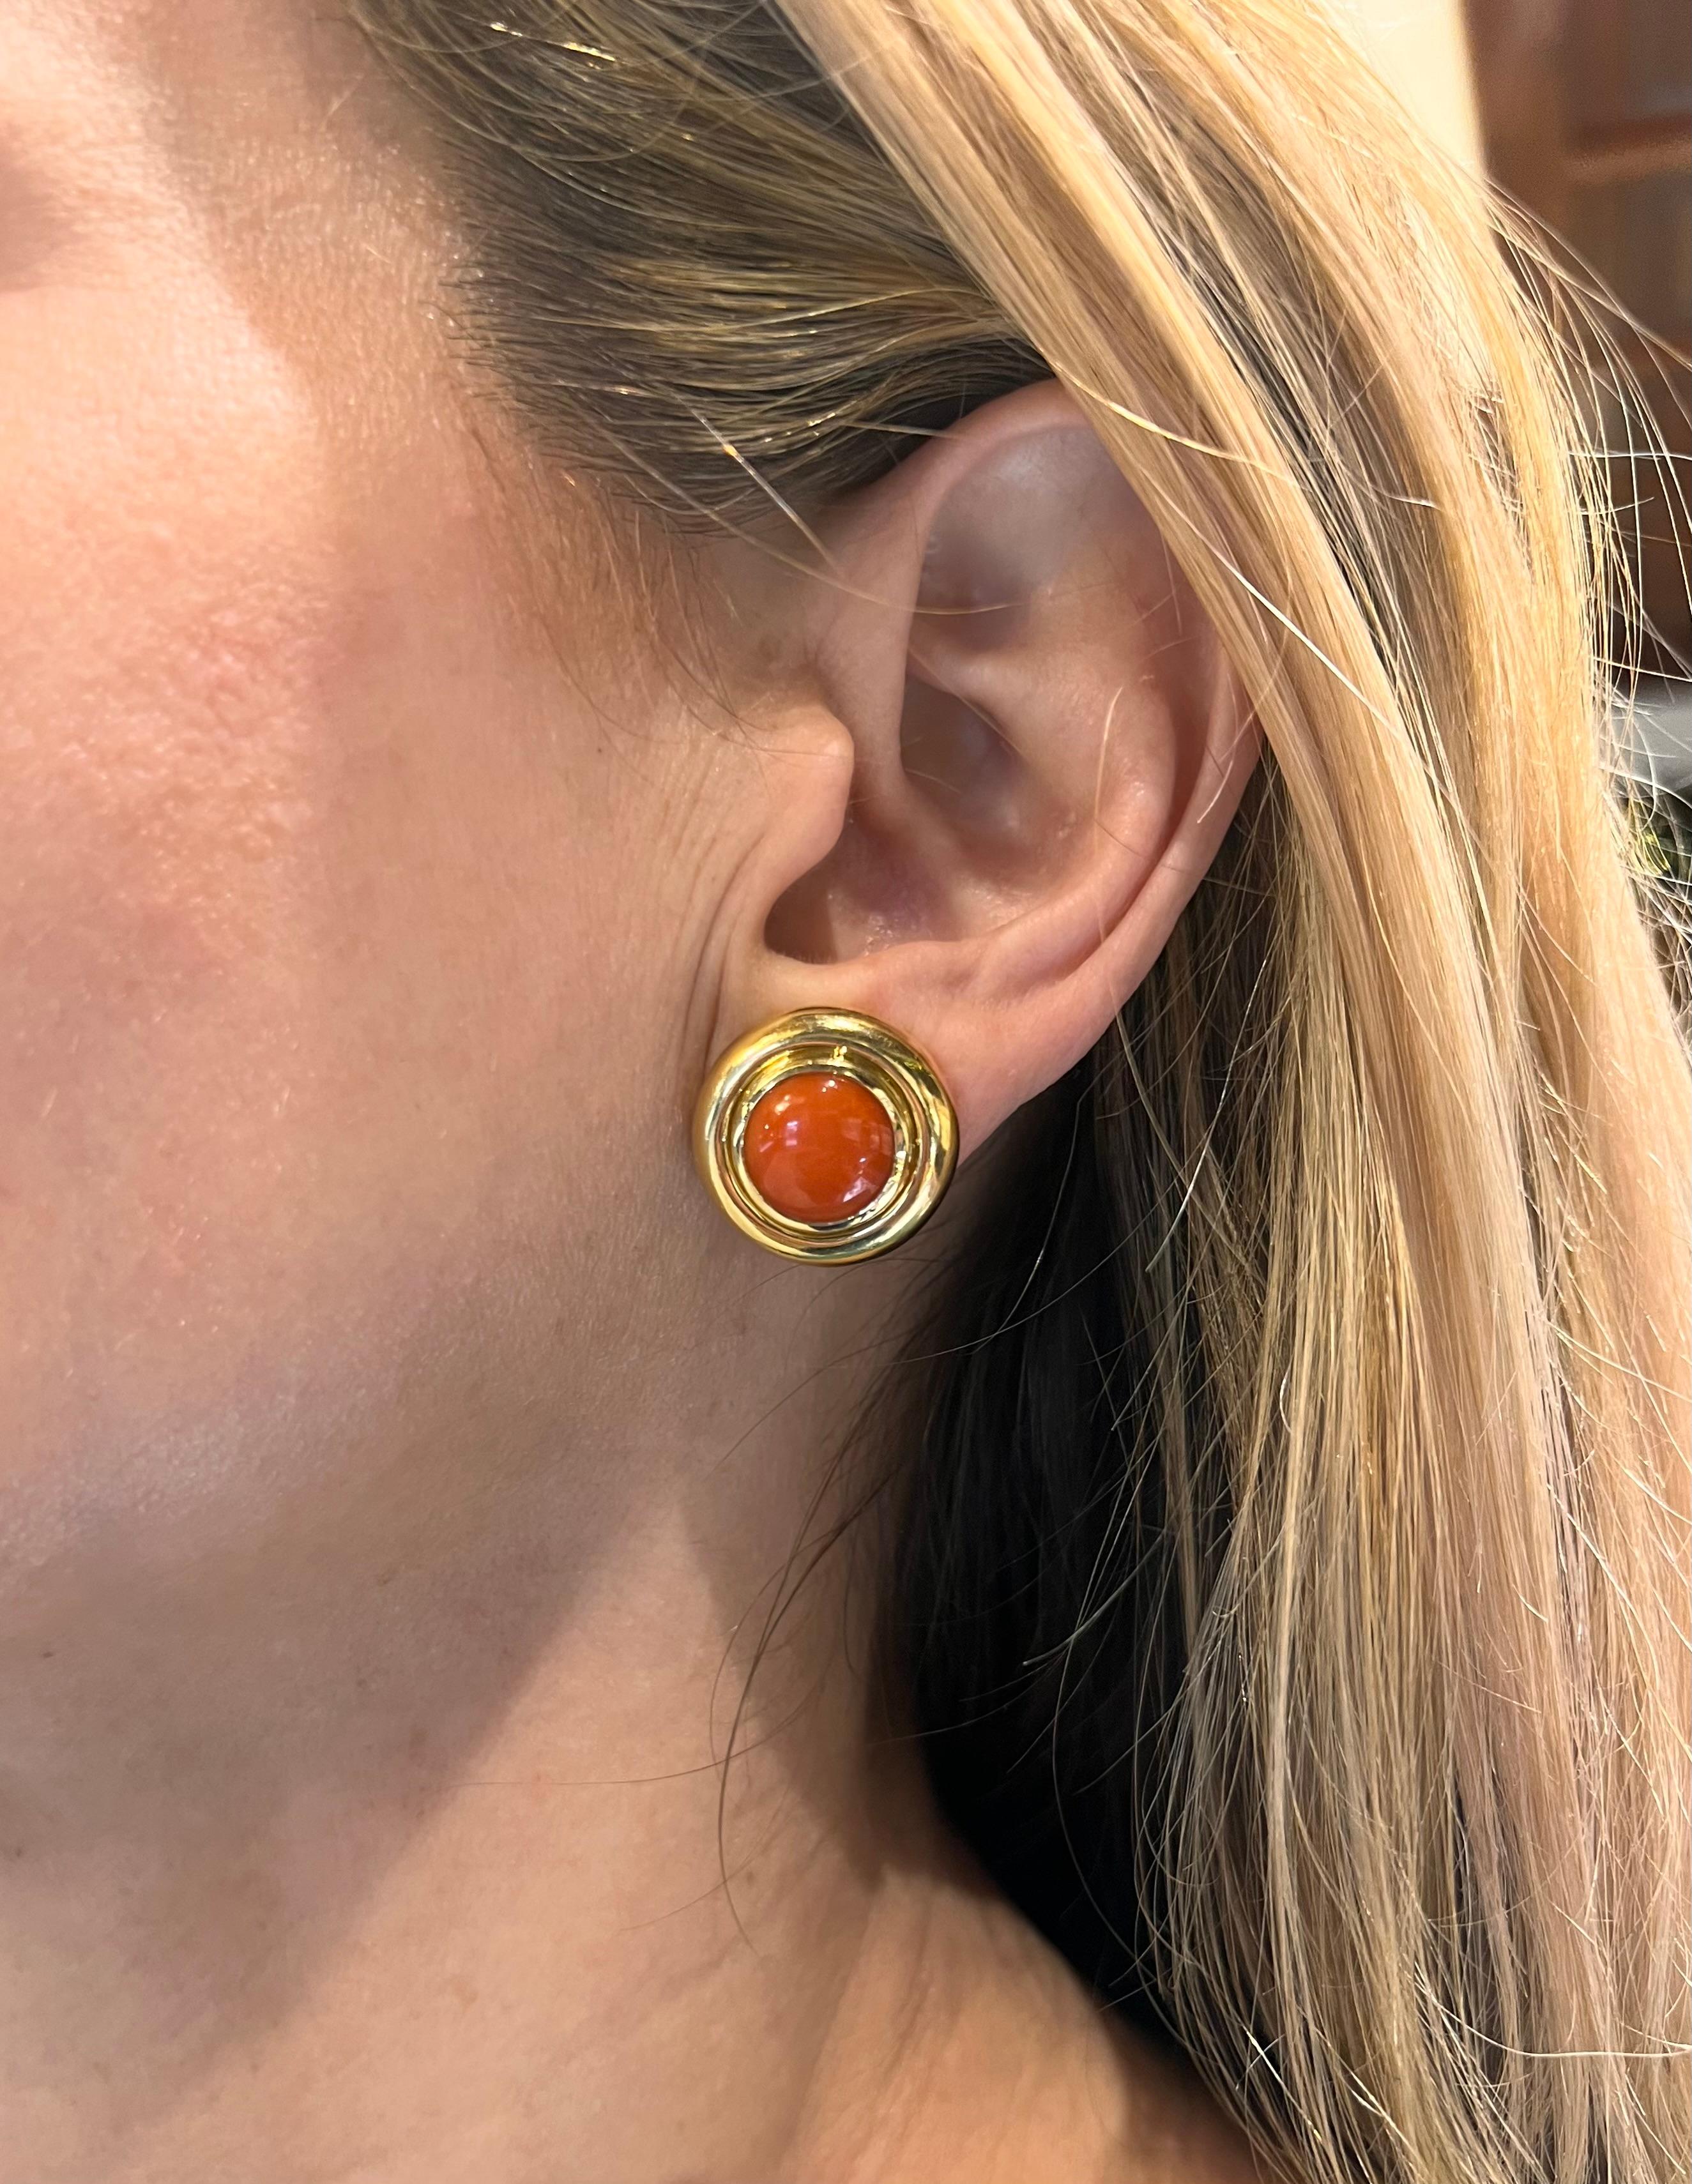 Créées par l'emblématique designer Paloma Picasso pour Tiffany & Co, ces boucles d'oreilles circulaires en or jaune 18 carats sont dotées d'un double chaton poli, sur lequel est incrusté un cabochon de corail naturel de couleur saumon-orange